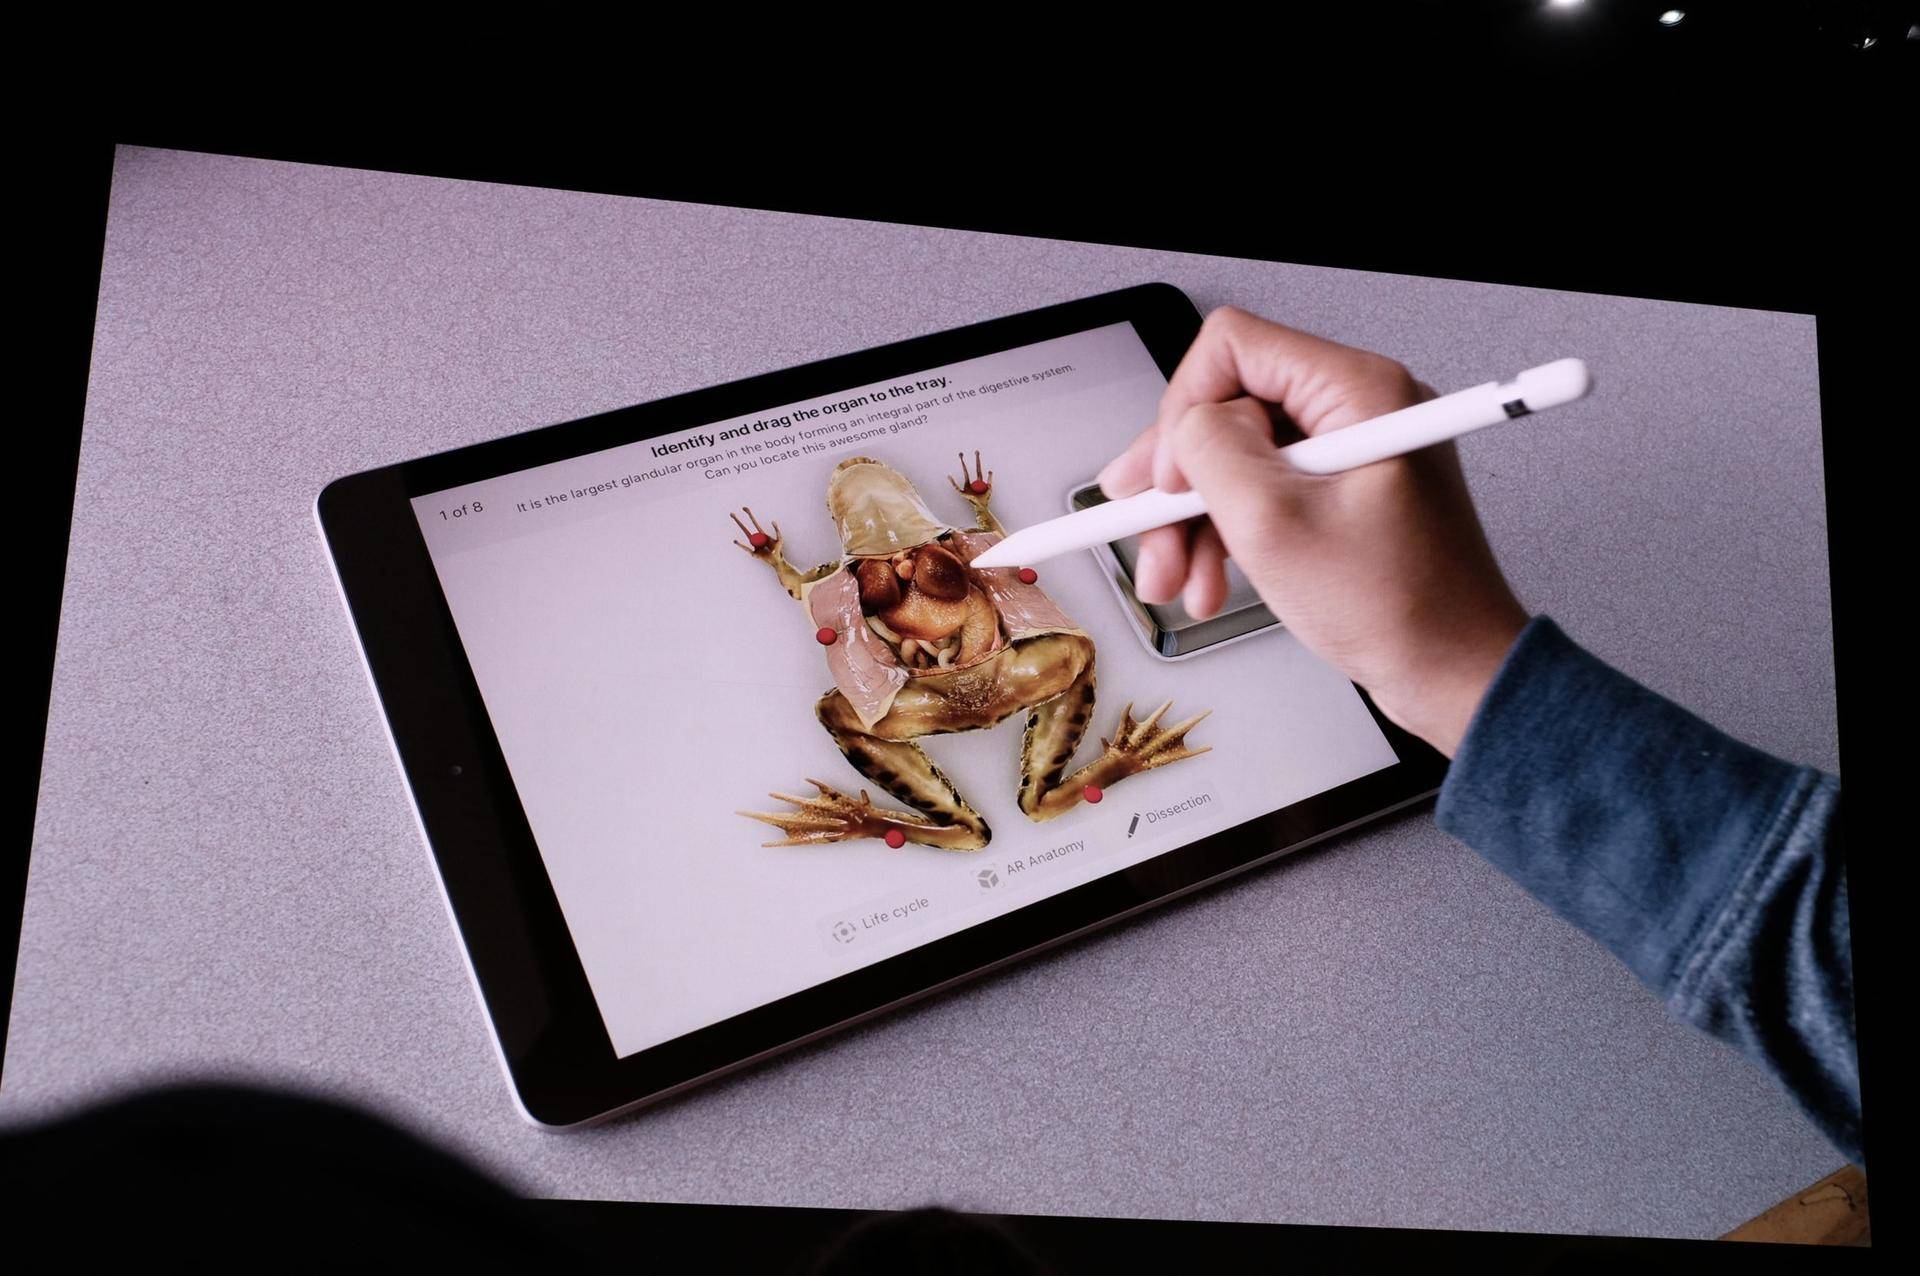 史上性价比最高的 iPad 发布,支持触控笔,最低